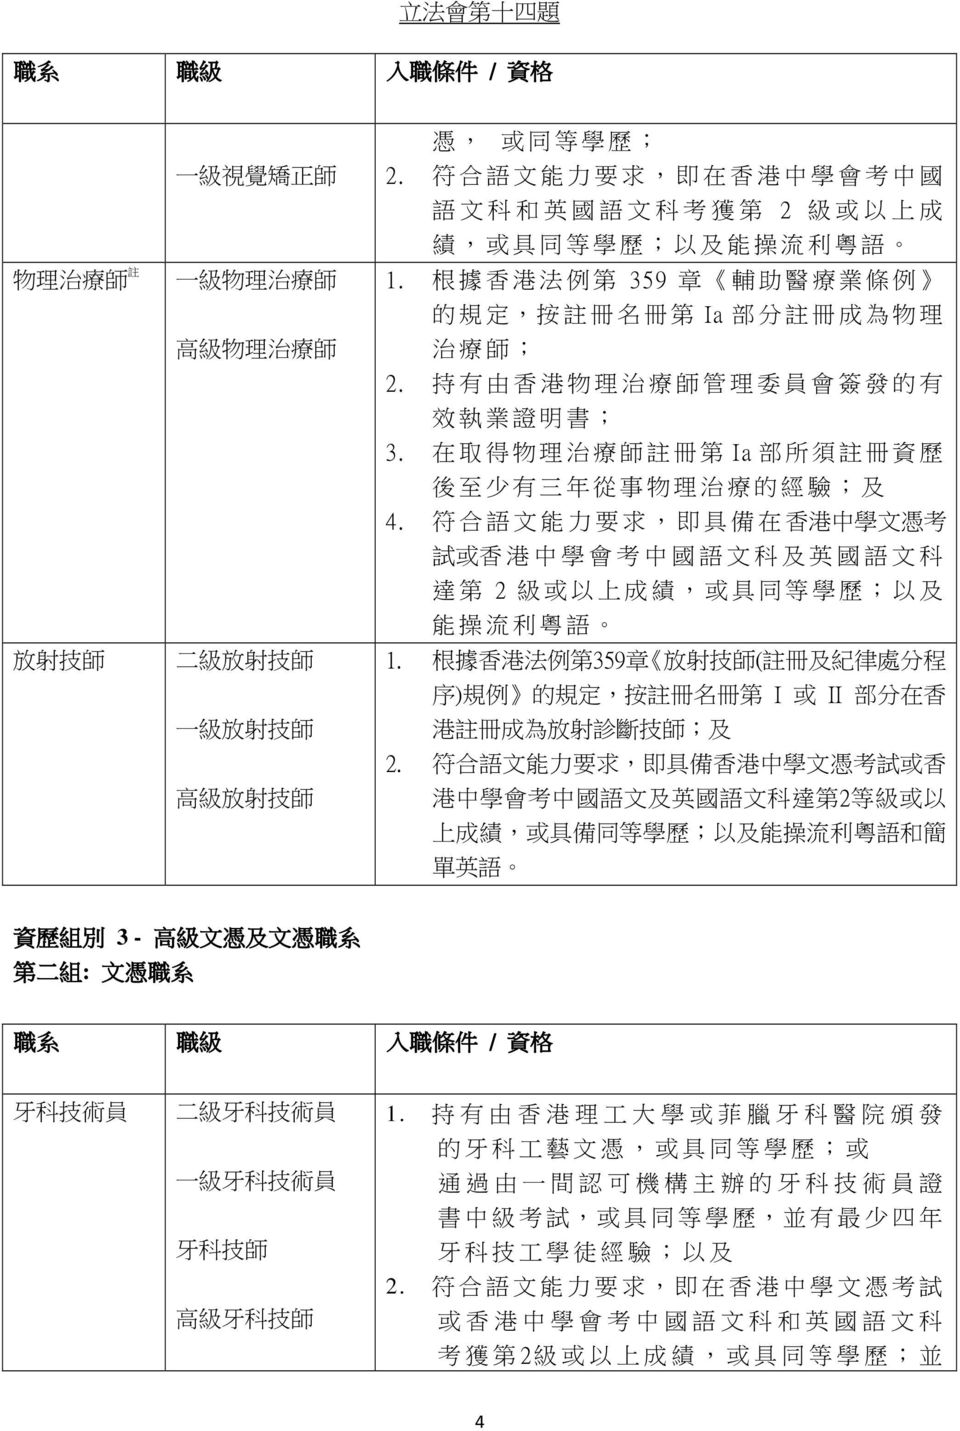 持 有 由 香 港 物 理 治 療 師 管 理 委 員 會 簽 發 的 有 效 執 業 證 明 書 ; 3. 在 取 得 物 理 治 療 師 註 冊 第 Ia 部 所 須 註 冊 資 歷 後 至 少 有 三 年 從 事 物 理 治 療 的 經 驗 ; 及 4.